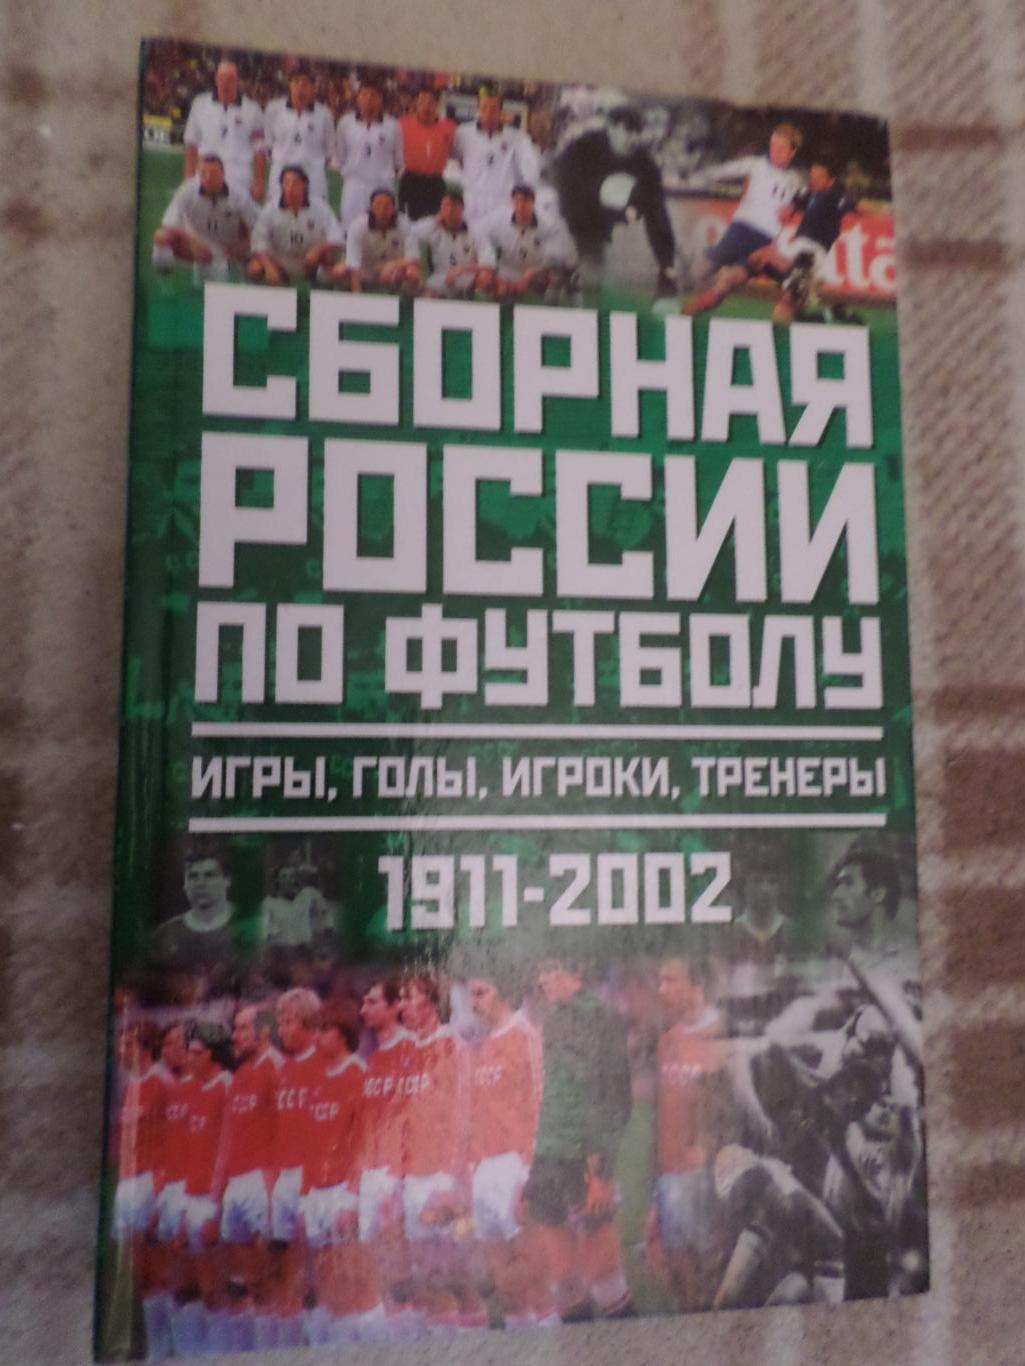 Лукашин - Сборная России по футболу 1911-2002 г